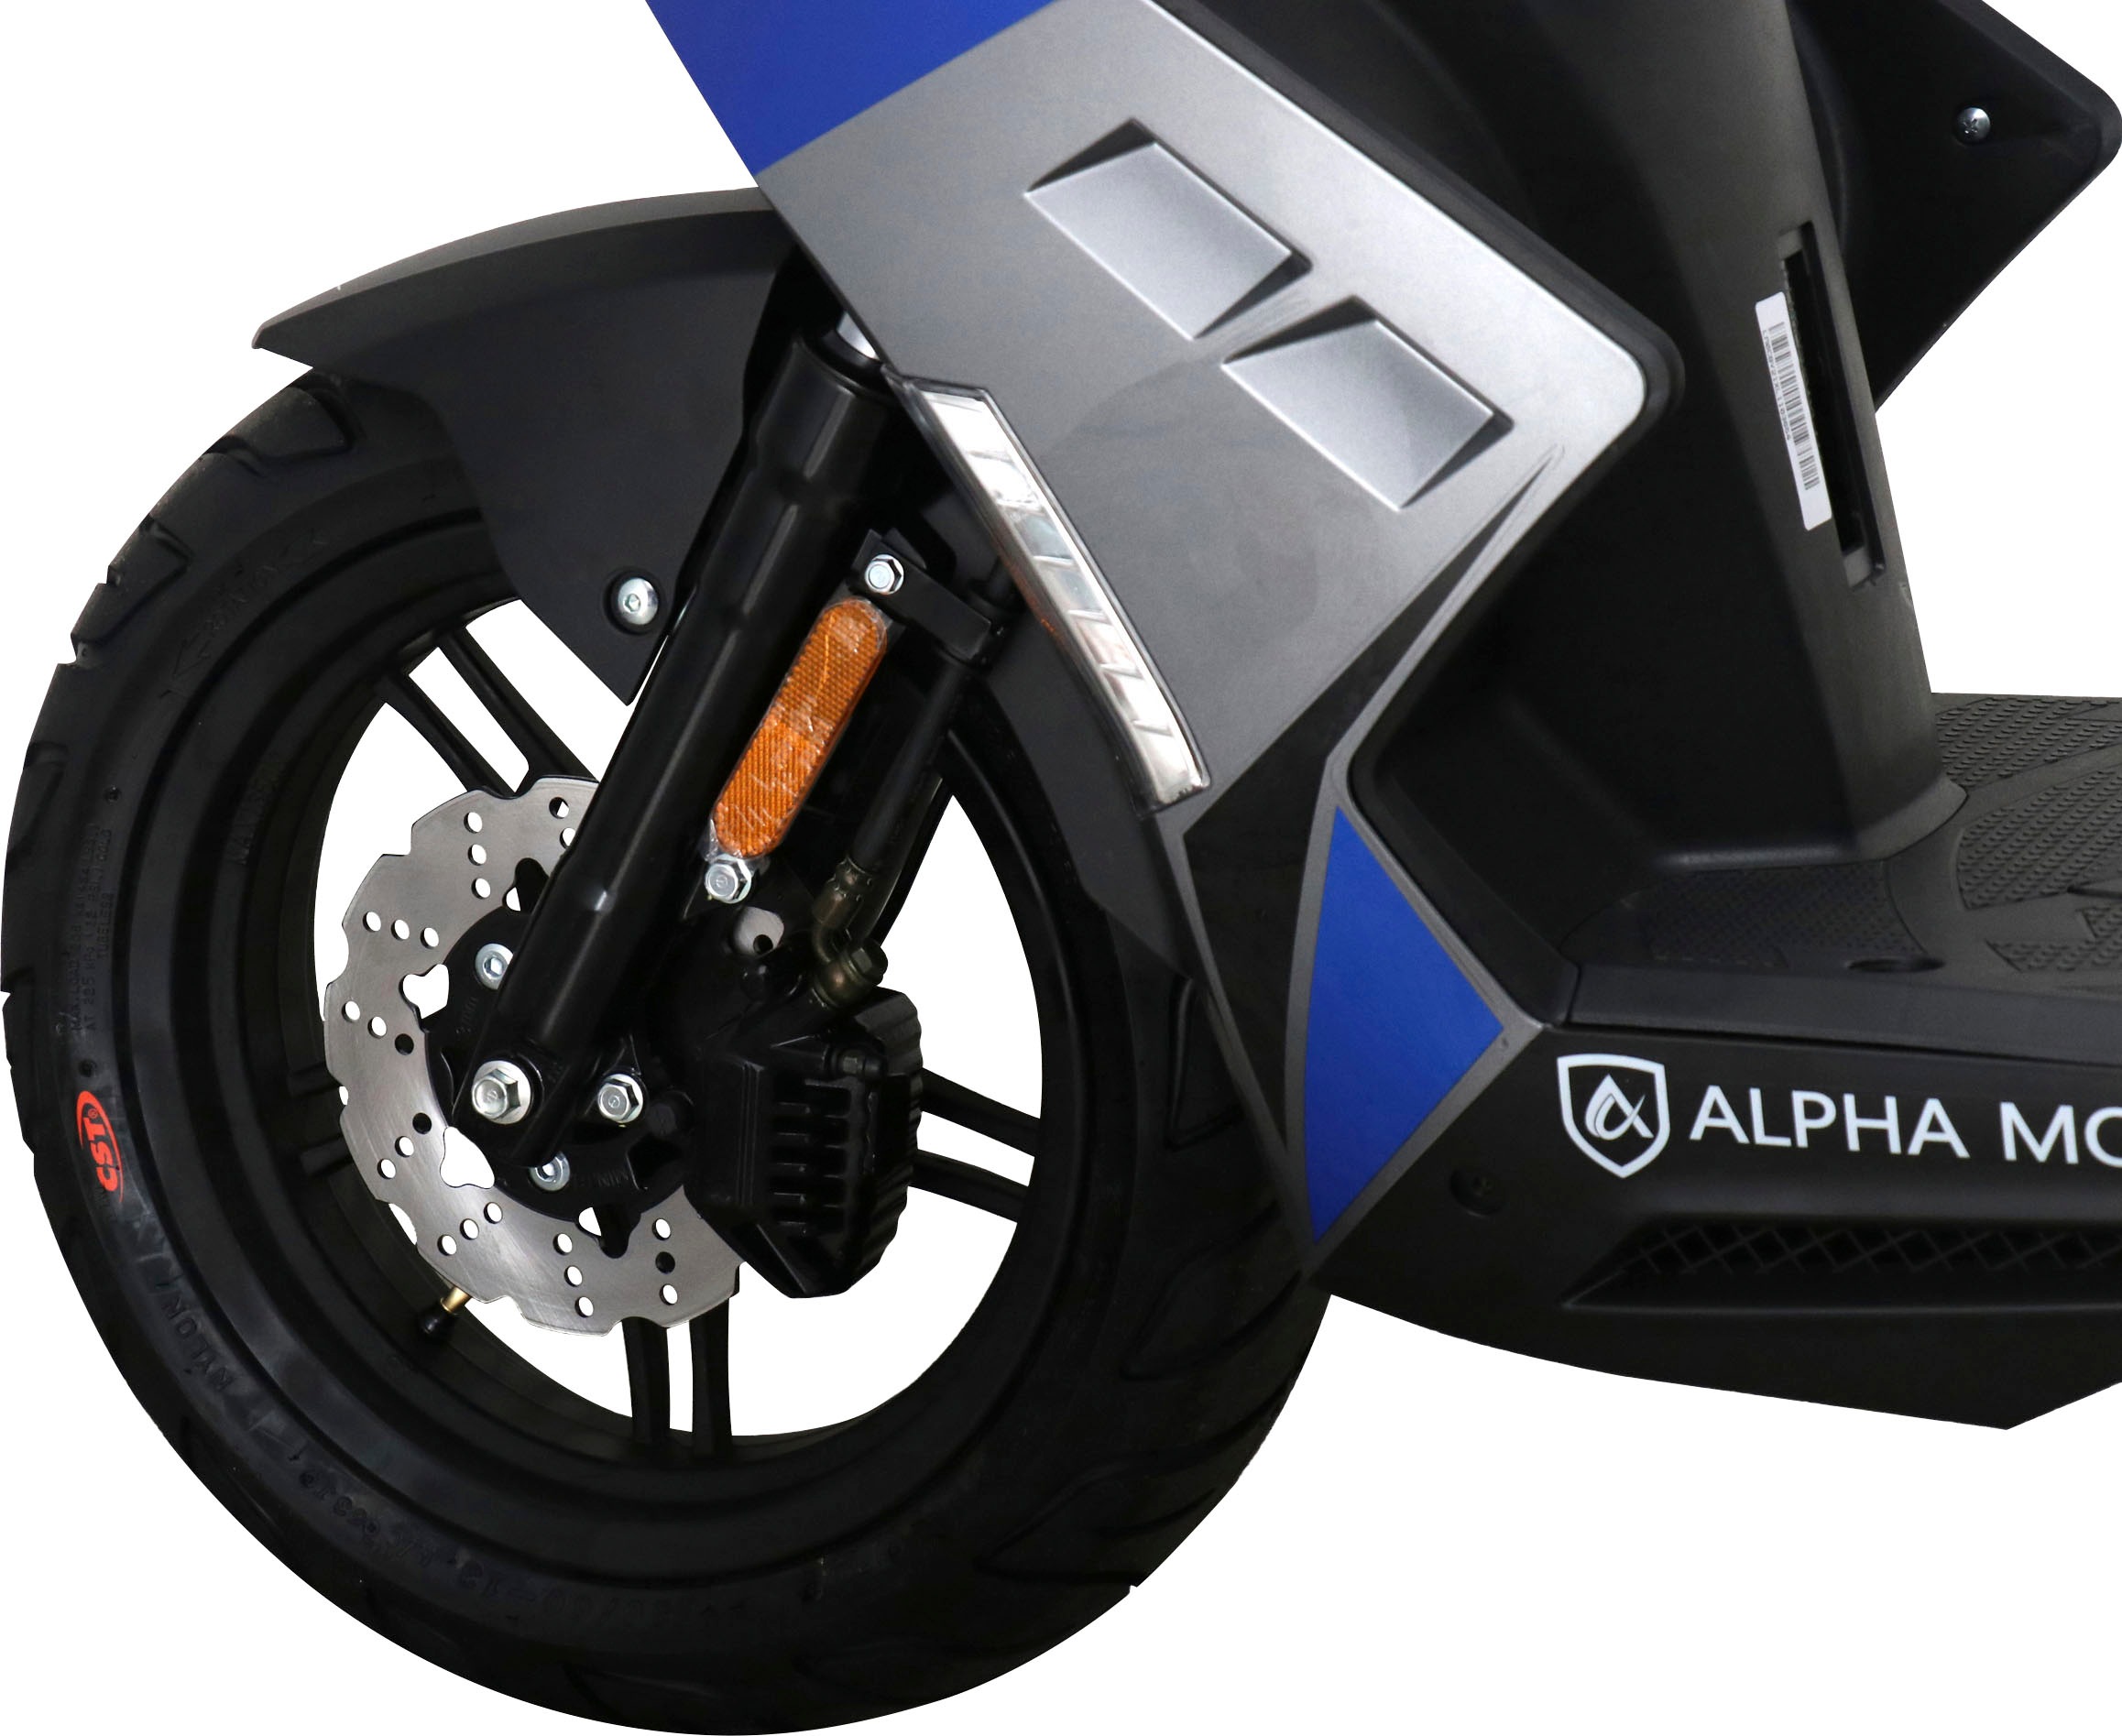 Alpha Motors Mofaroller »Mustang FI«, 50 cm³, 25 km/h, Euro 5, 2,72 PS, mit USB-Anschluss und Lenkerschloss, sportliches Design